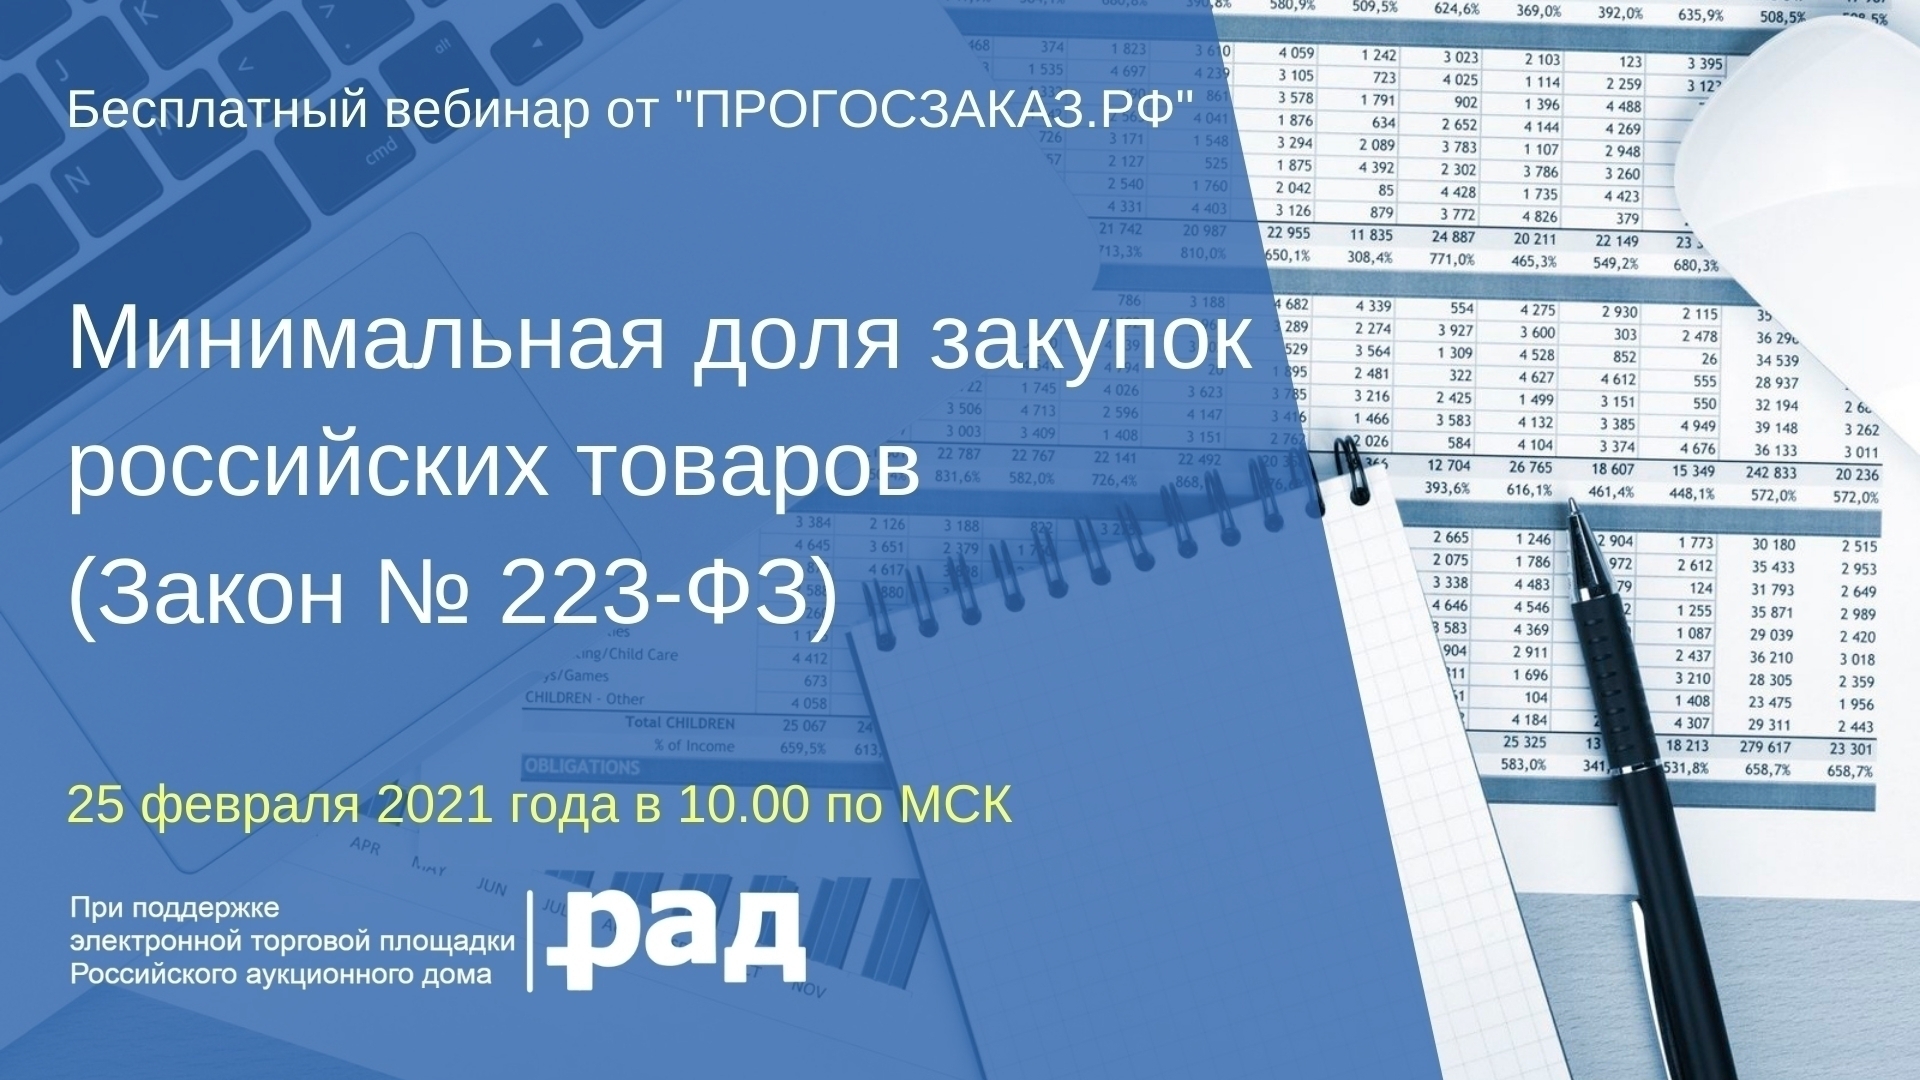 25 февраля 2021 года в 10:00 по МСК состоится вебинар на тему «Минимальная доля закупок российских товаров» (Закон № 223-ФЗ)